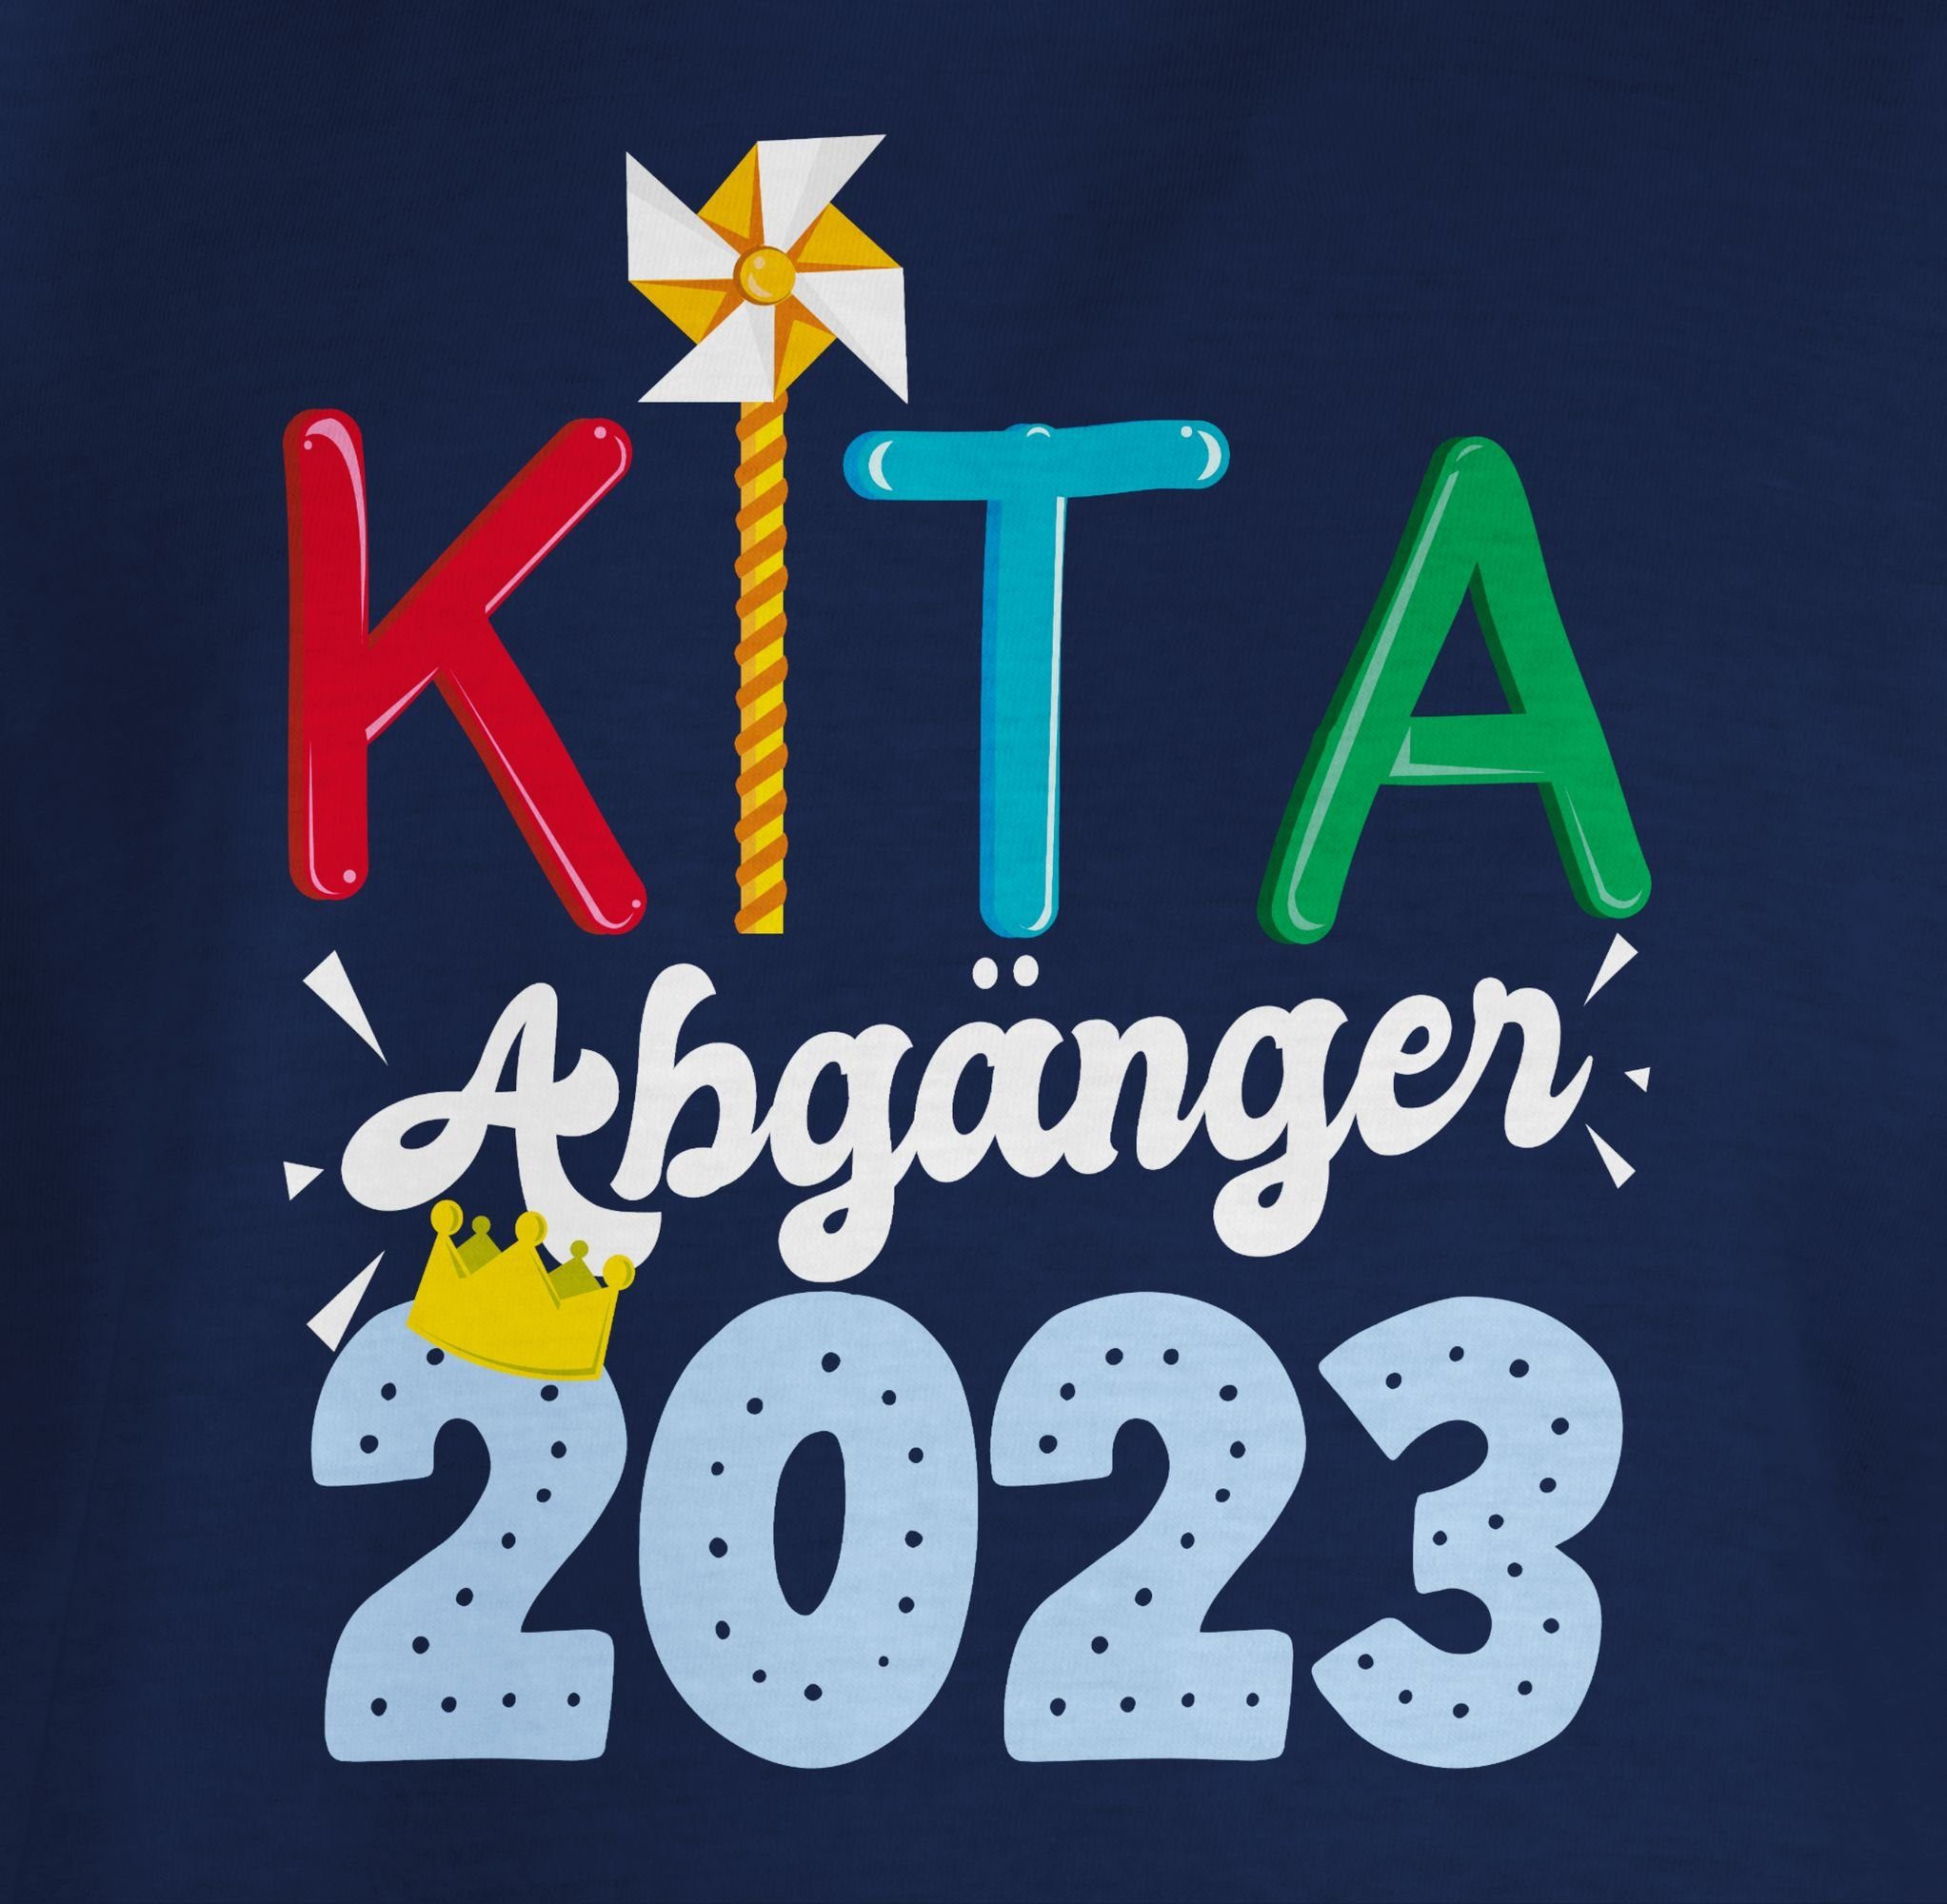 Shirtracer T-Shirt Geschenke Kita Blau Abgänger Schulanfang Junge Einschulung 2023 I Navy 1